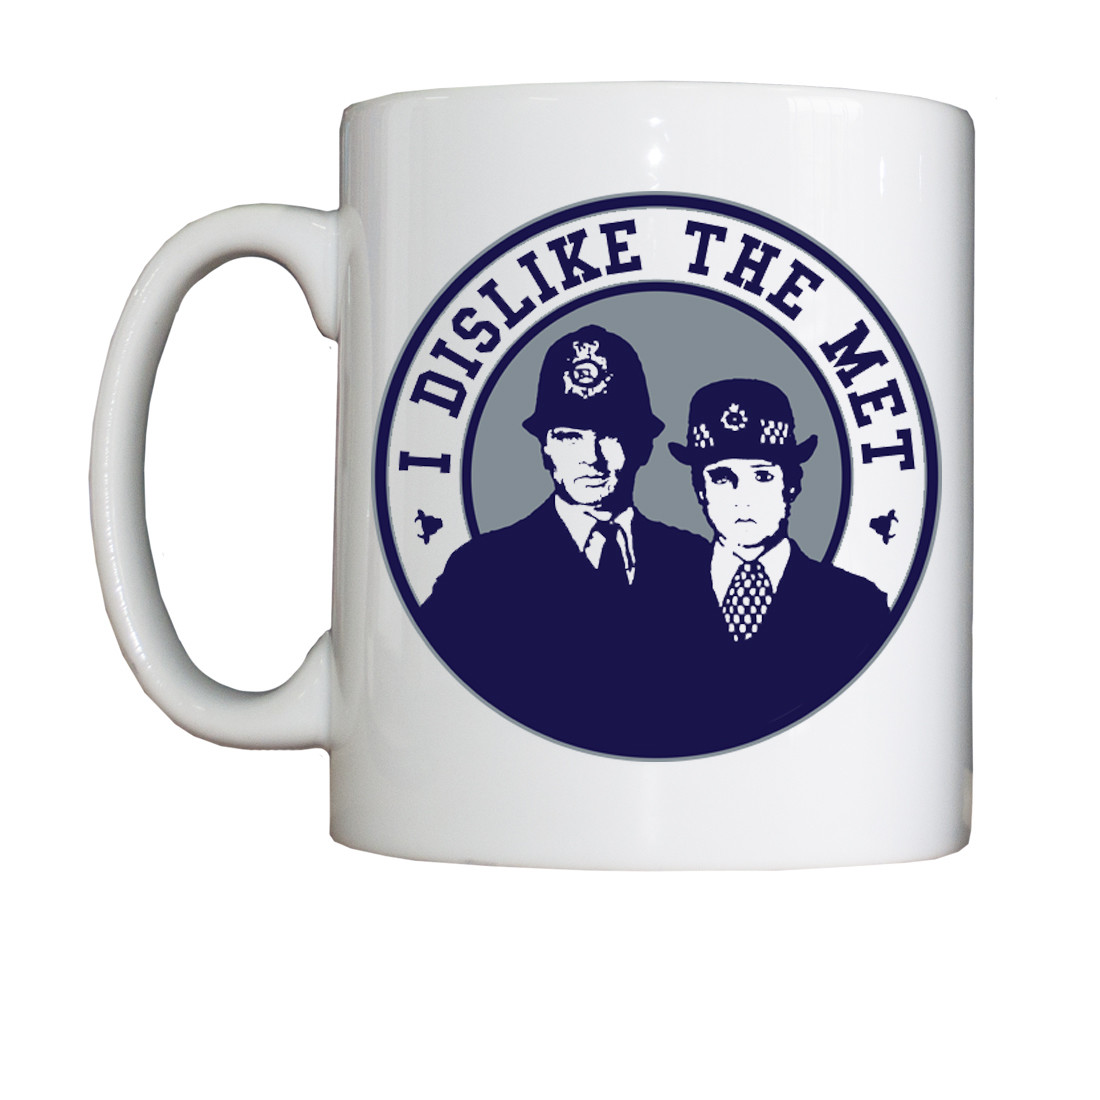 Personalised 'I Dislike The Met' Drinking Vessel (Mug)